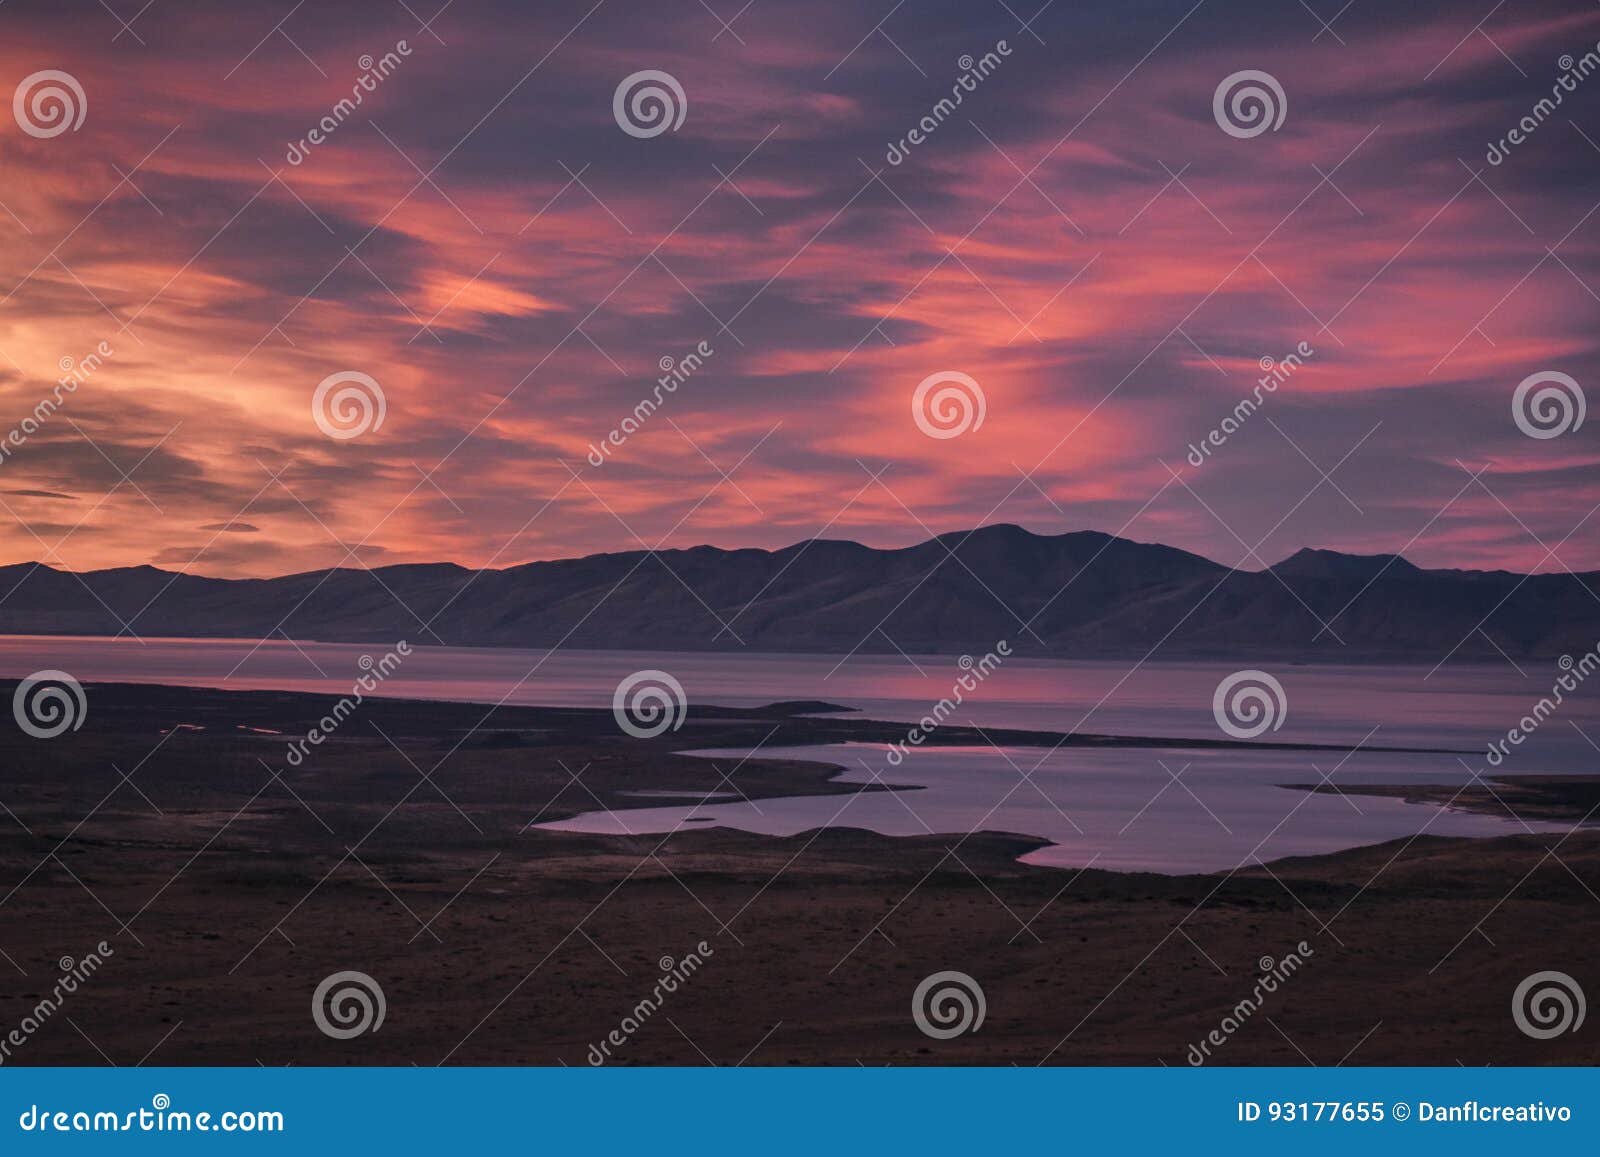 mirador de las aguilas viewpoint, patagonia, argentina